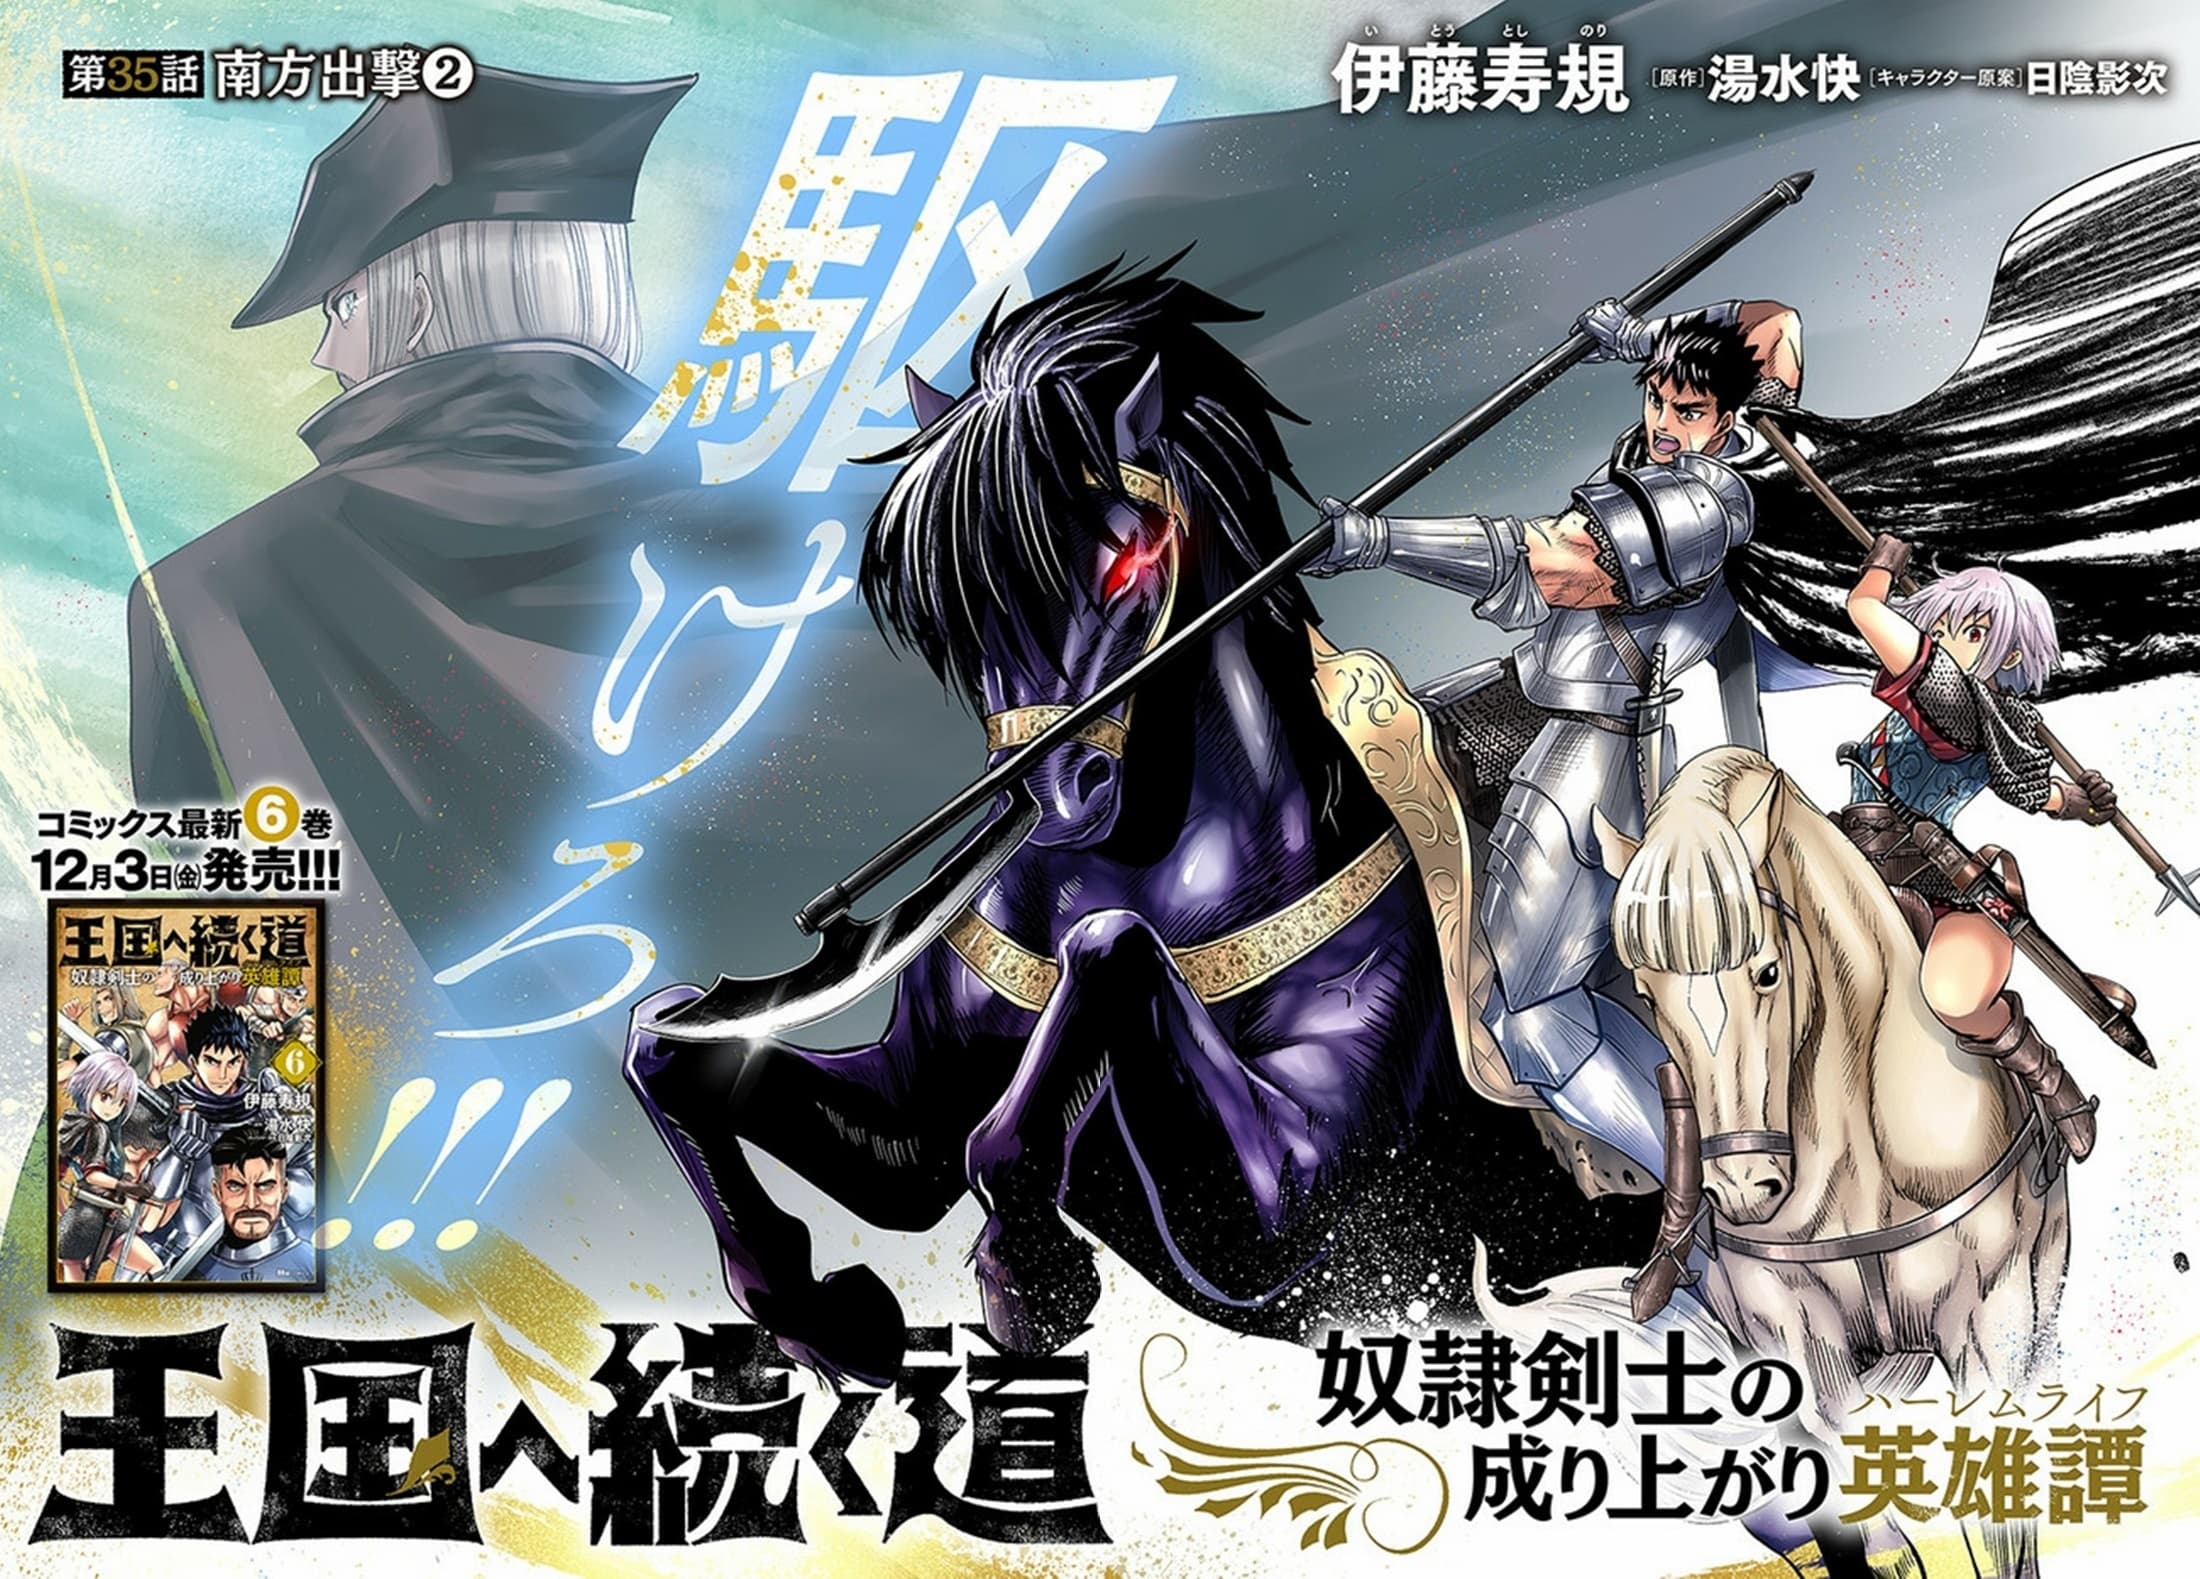 Oukoku e Tsuzuku Michi dorei Kenshi no Nariagari Eiyutan (Haaremu Raifu) - Road to the Kingdom Slave Swordsman the Rise of Heroes - Harem Life 35-35